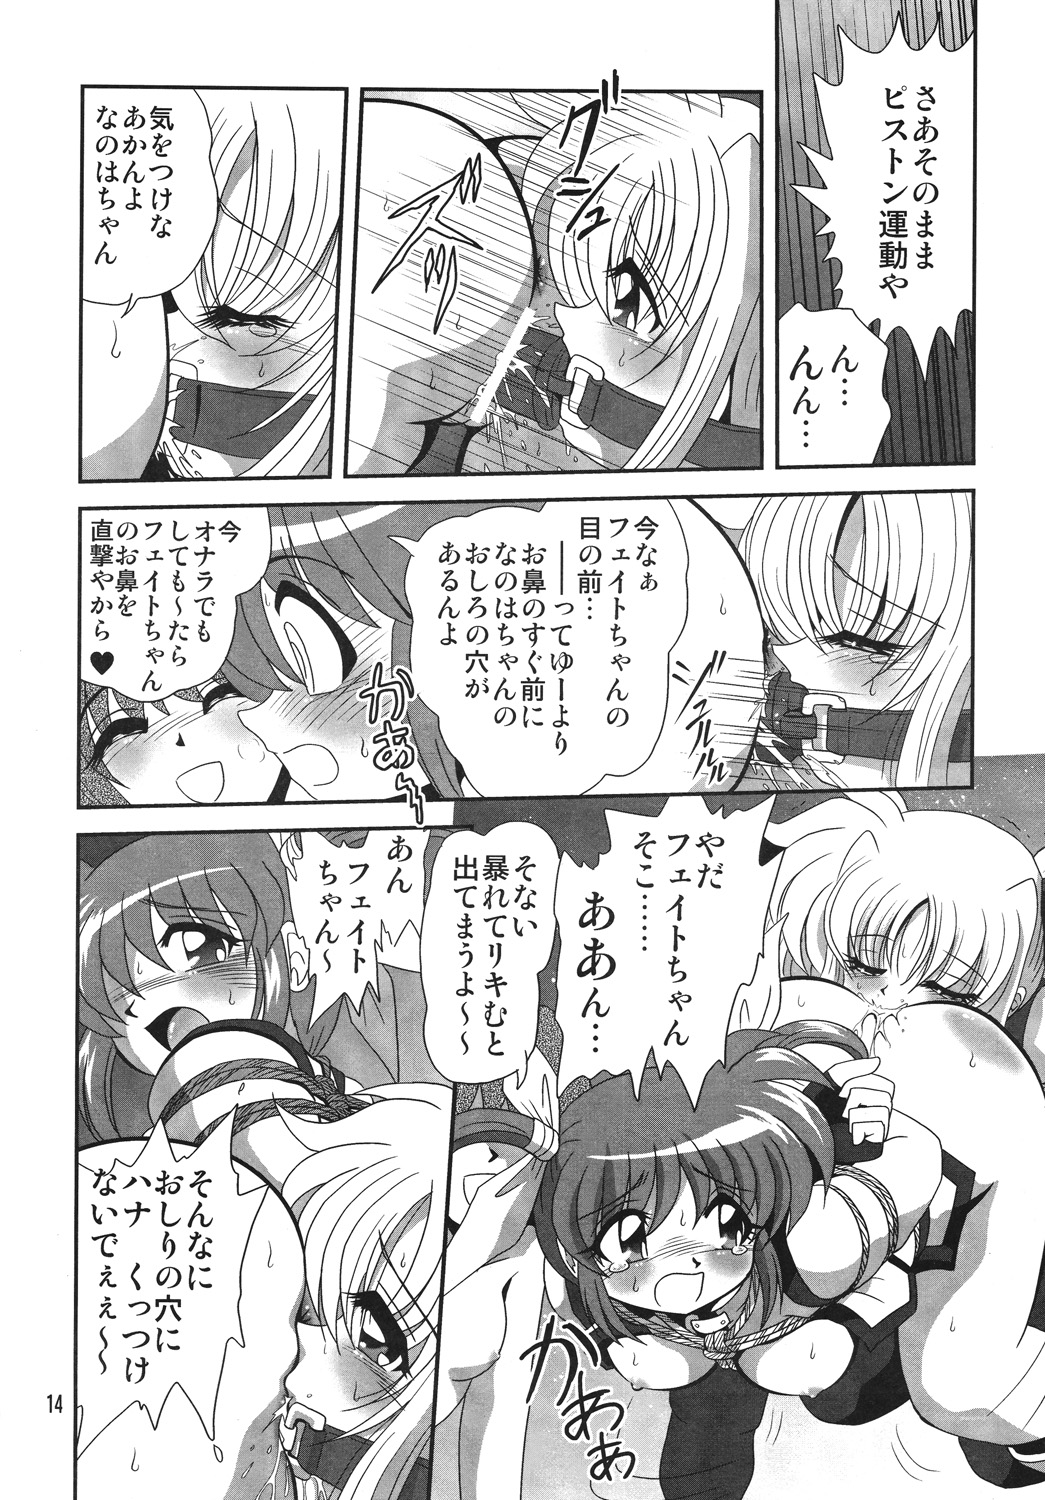 [Thirty Saver Street 2D Shooting] Storage Ignition 4 (Mahou Shoujo Lyrical Nanoha / Magical Girl Lyrical Nanoha) page 13 full